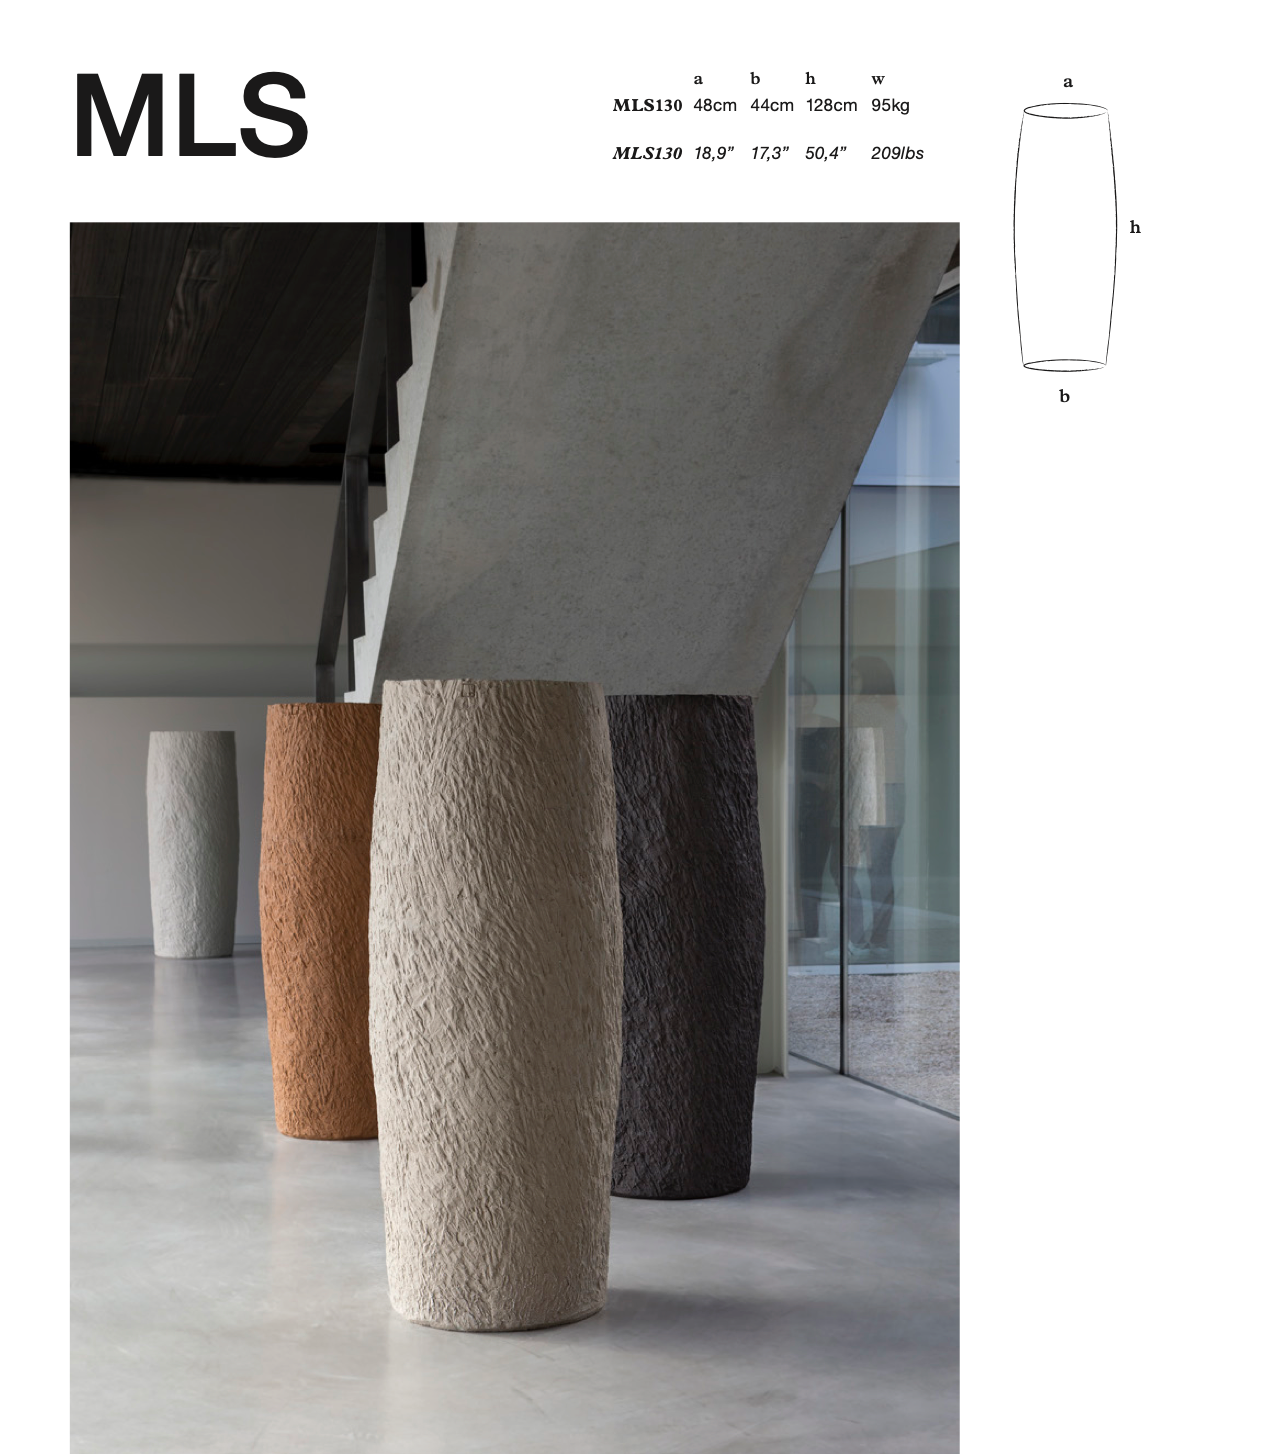 Handgefertigtes Design: Großes MLS Gefäß von Atelier Vierkant